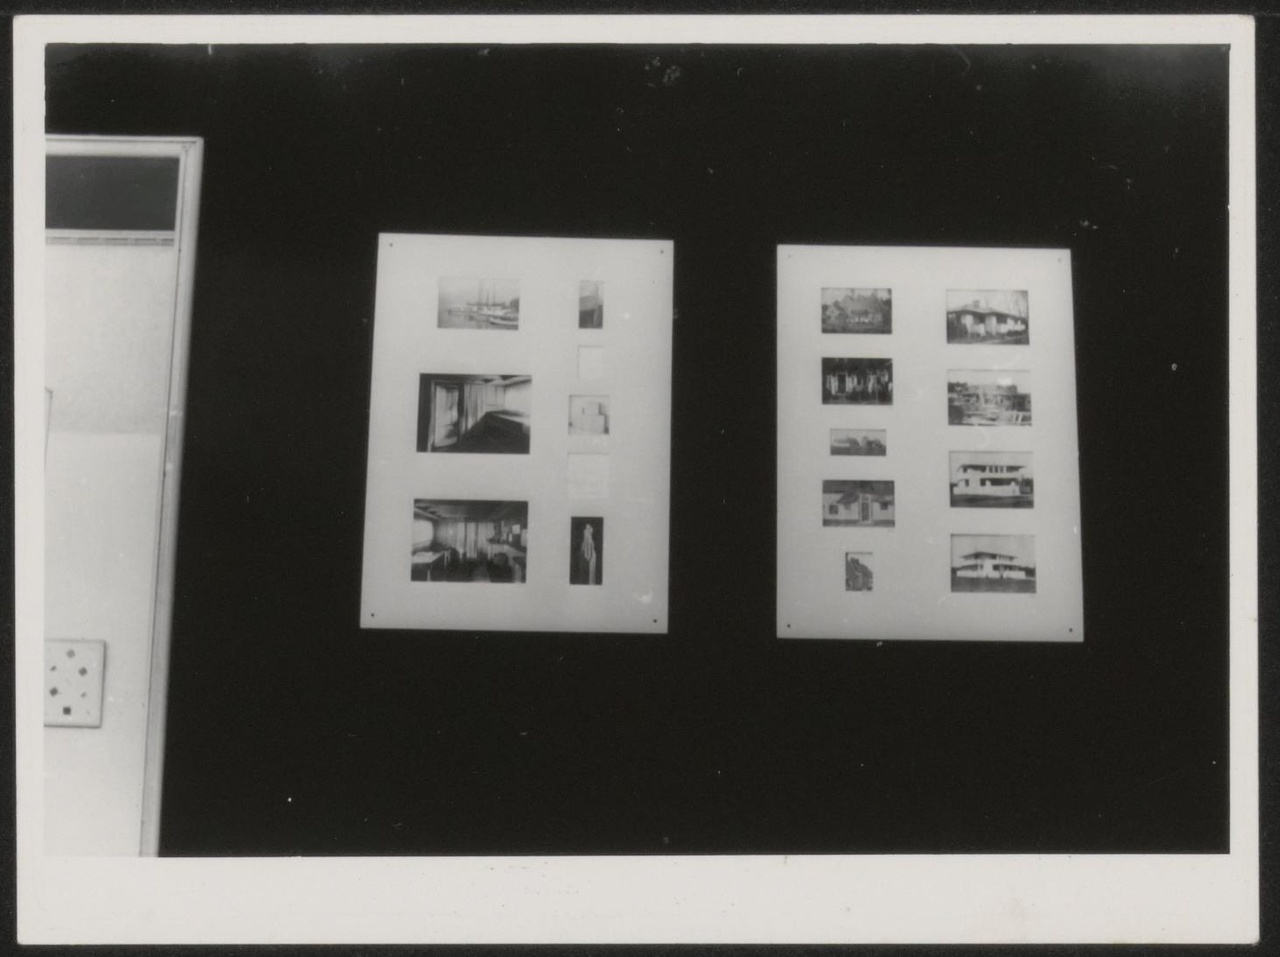 Afbeelding van tentoonstelling De Stijl SMA, 1951, zaal 2, zwarte wand met twee fotopanelen